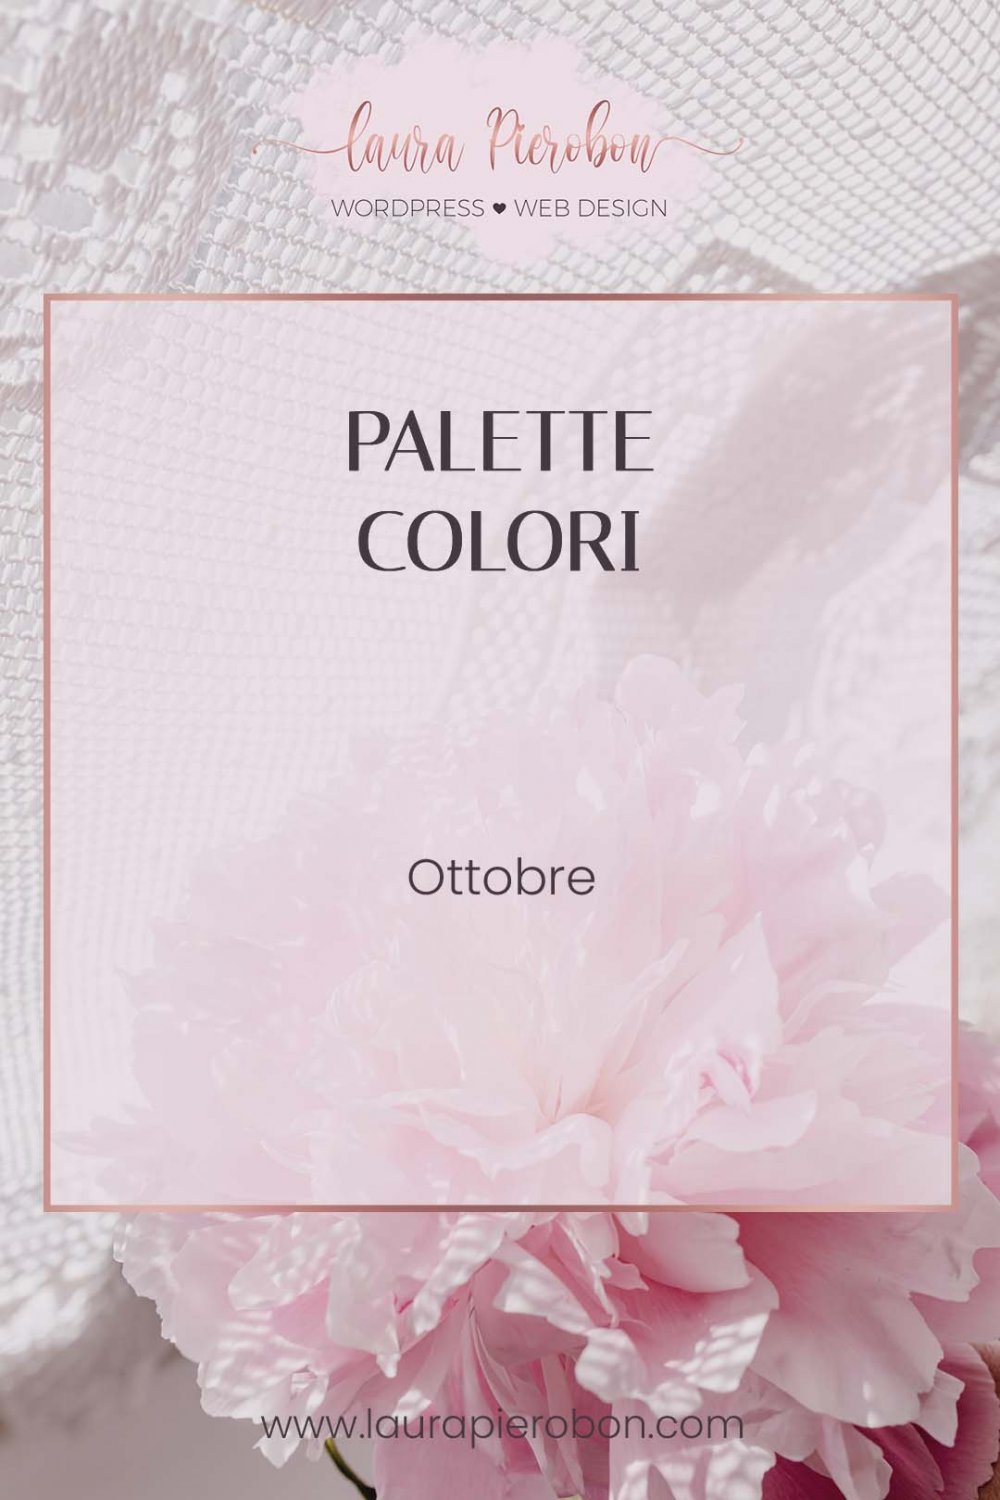 Palette colori di Ottobre © Laura Pierobon - WordPress ❤︎ Web Design